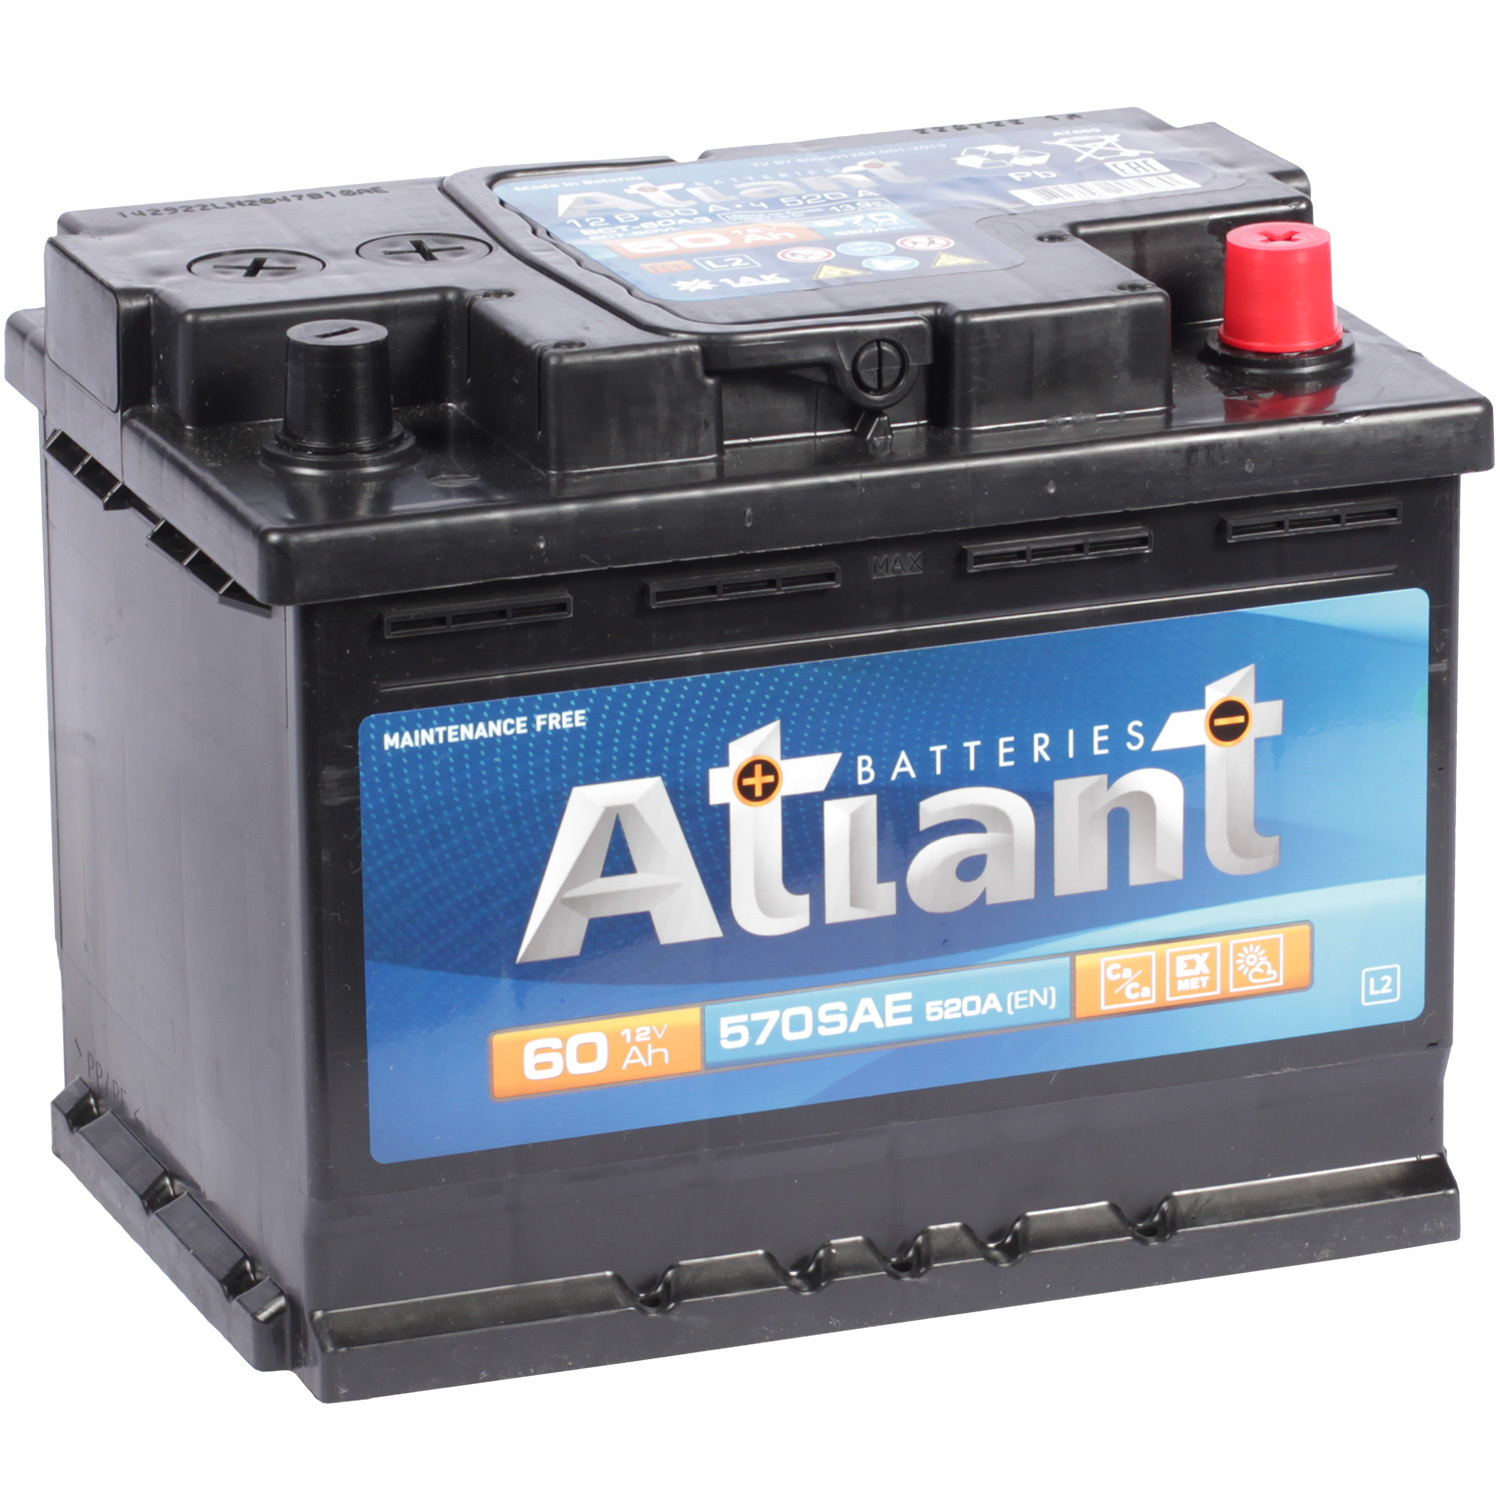 Atlant Автомобильный аккумулятор Atlant 60 Ач обратная полярность L2